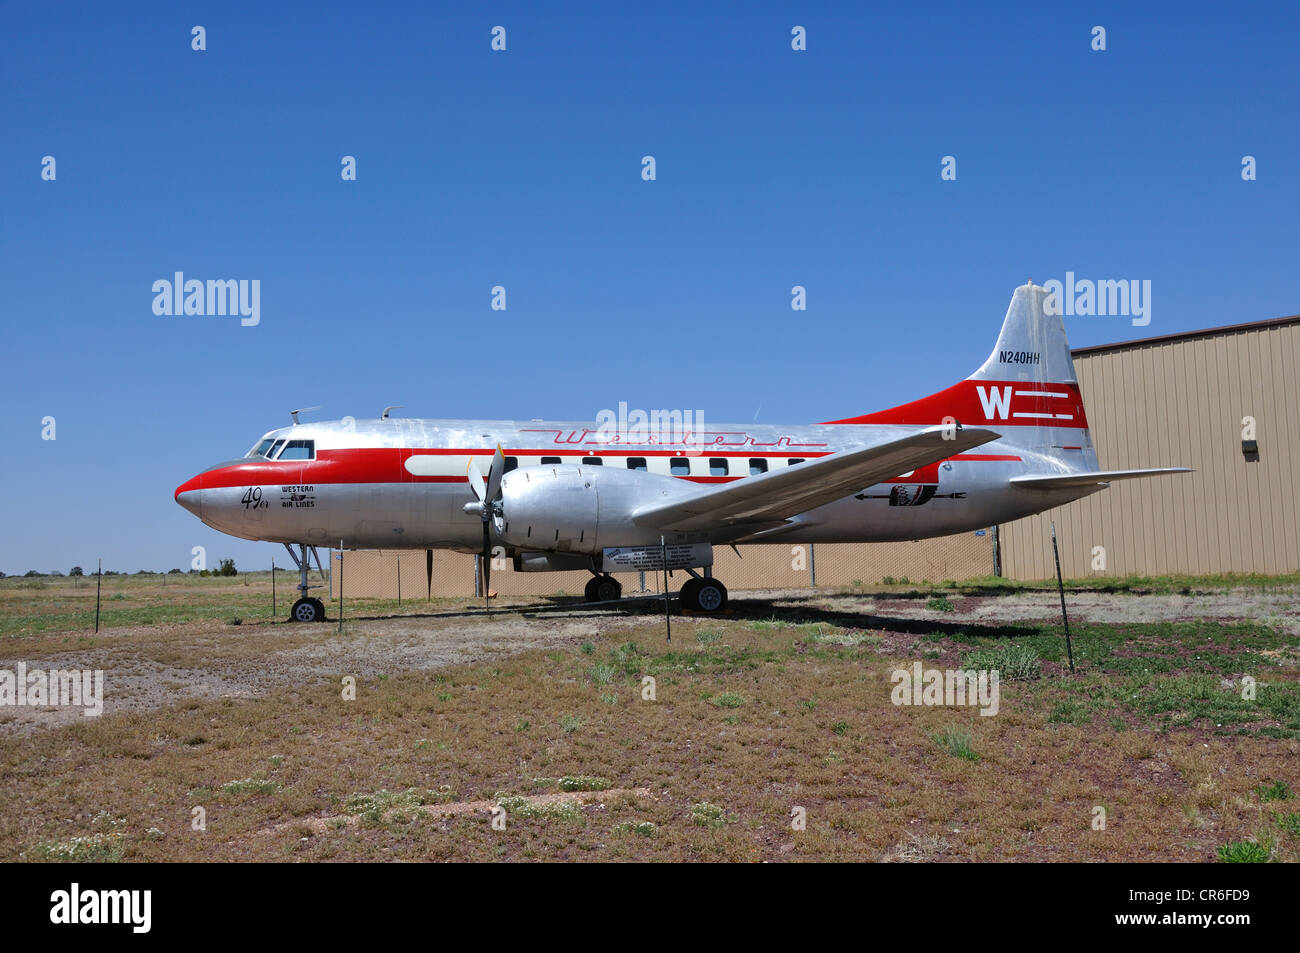 Western Air lines avion à passagers commerciaux du musée Planes of Fame, Valle, Arizona, USA Banque D'Images